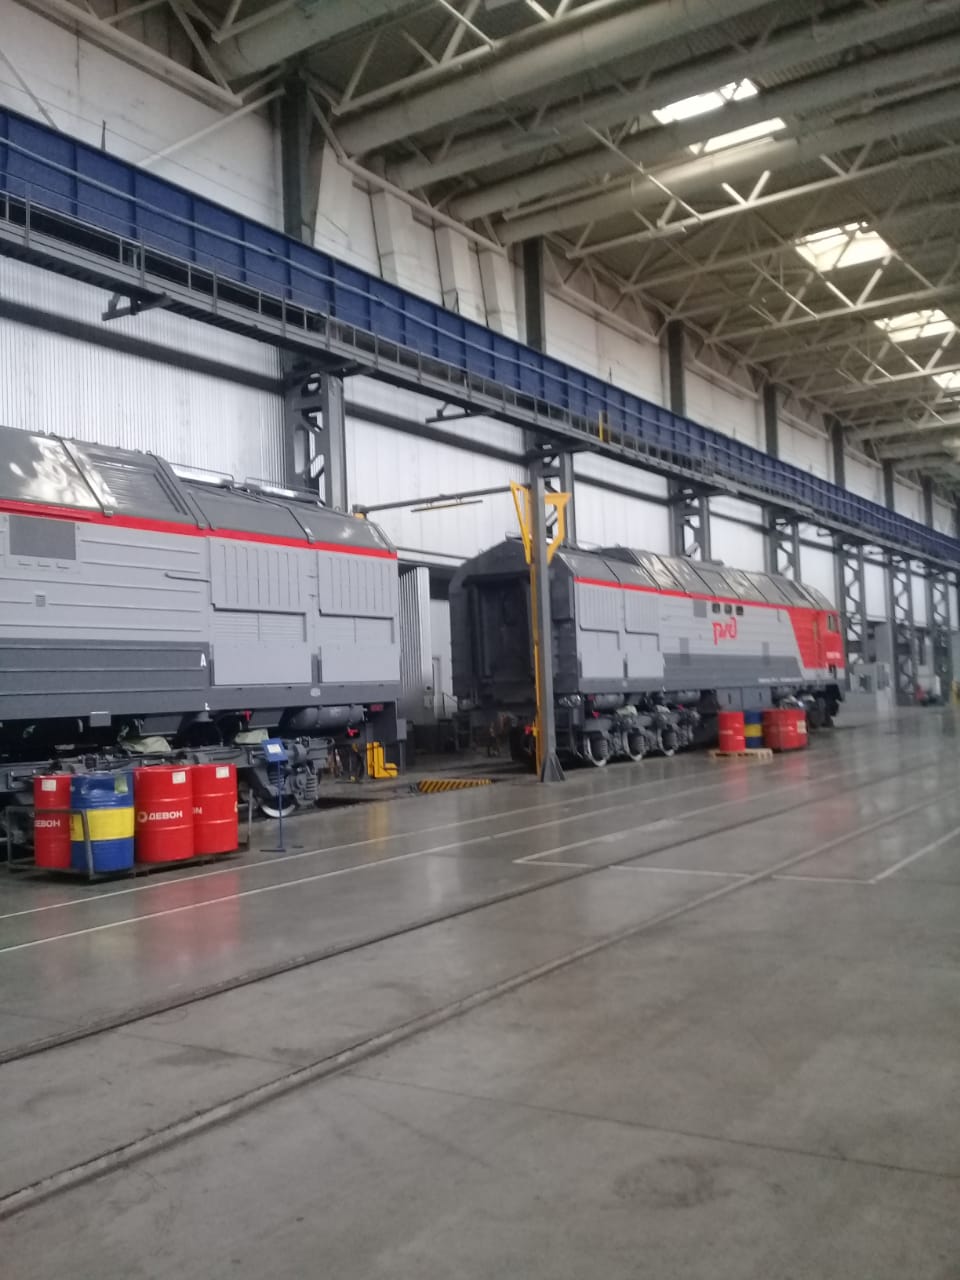  جولة لليوم السابع بمصنع جرارات السكة الحديد الروسى (2)